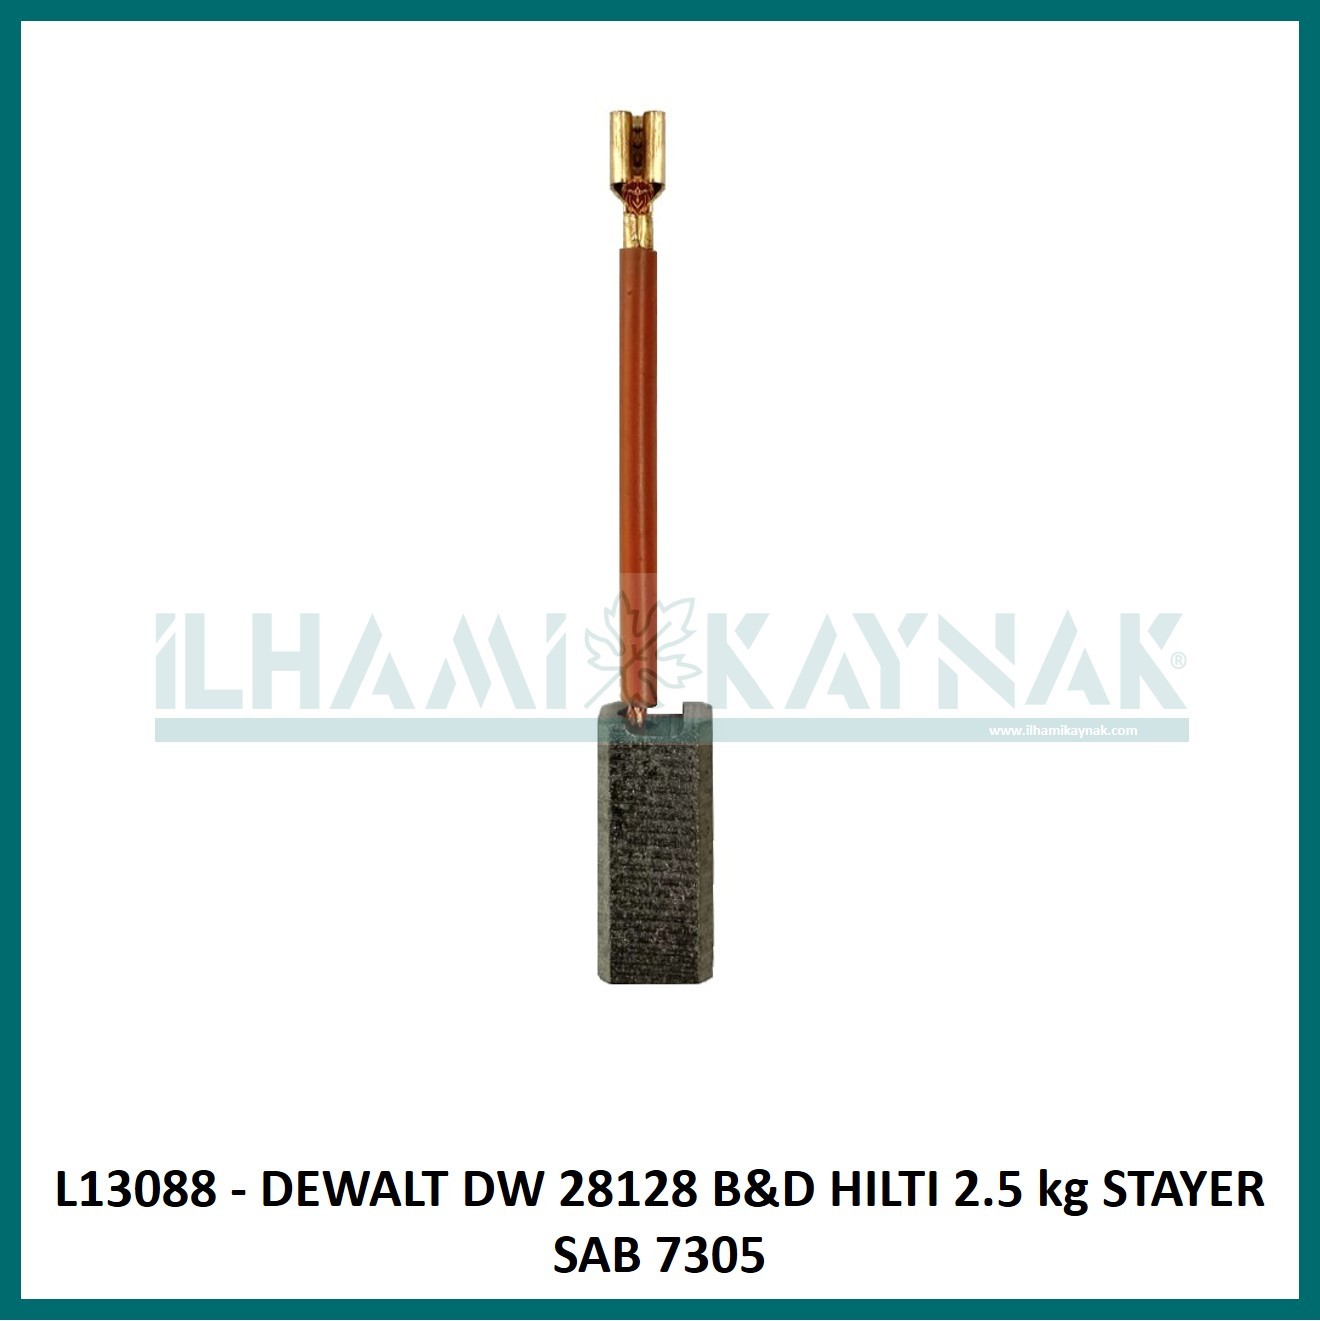 L13088 - DEWALT DW 28128 B&D HILTI 2.5 kg STAYER SAB 7305 - 6*8*18 mm - 100 Adet